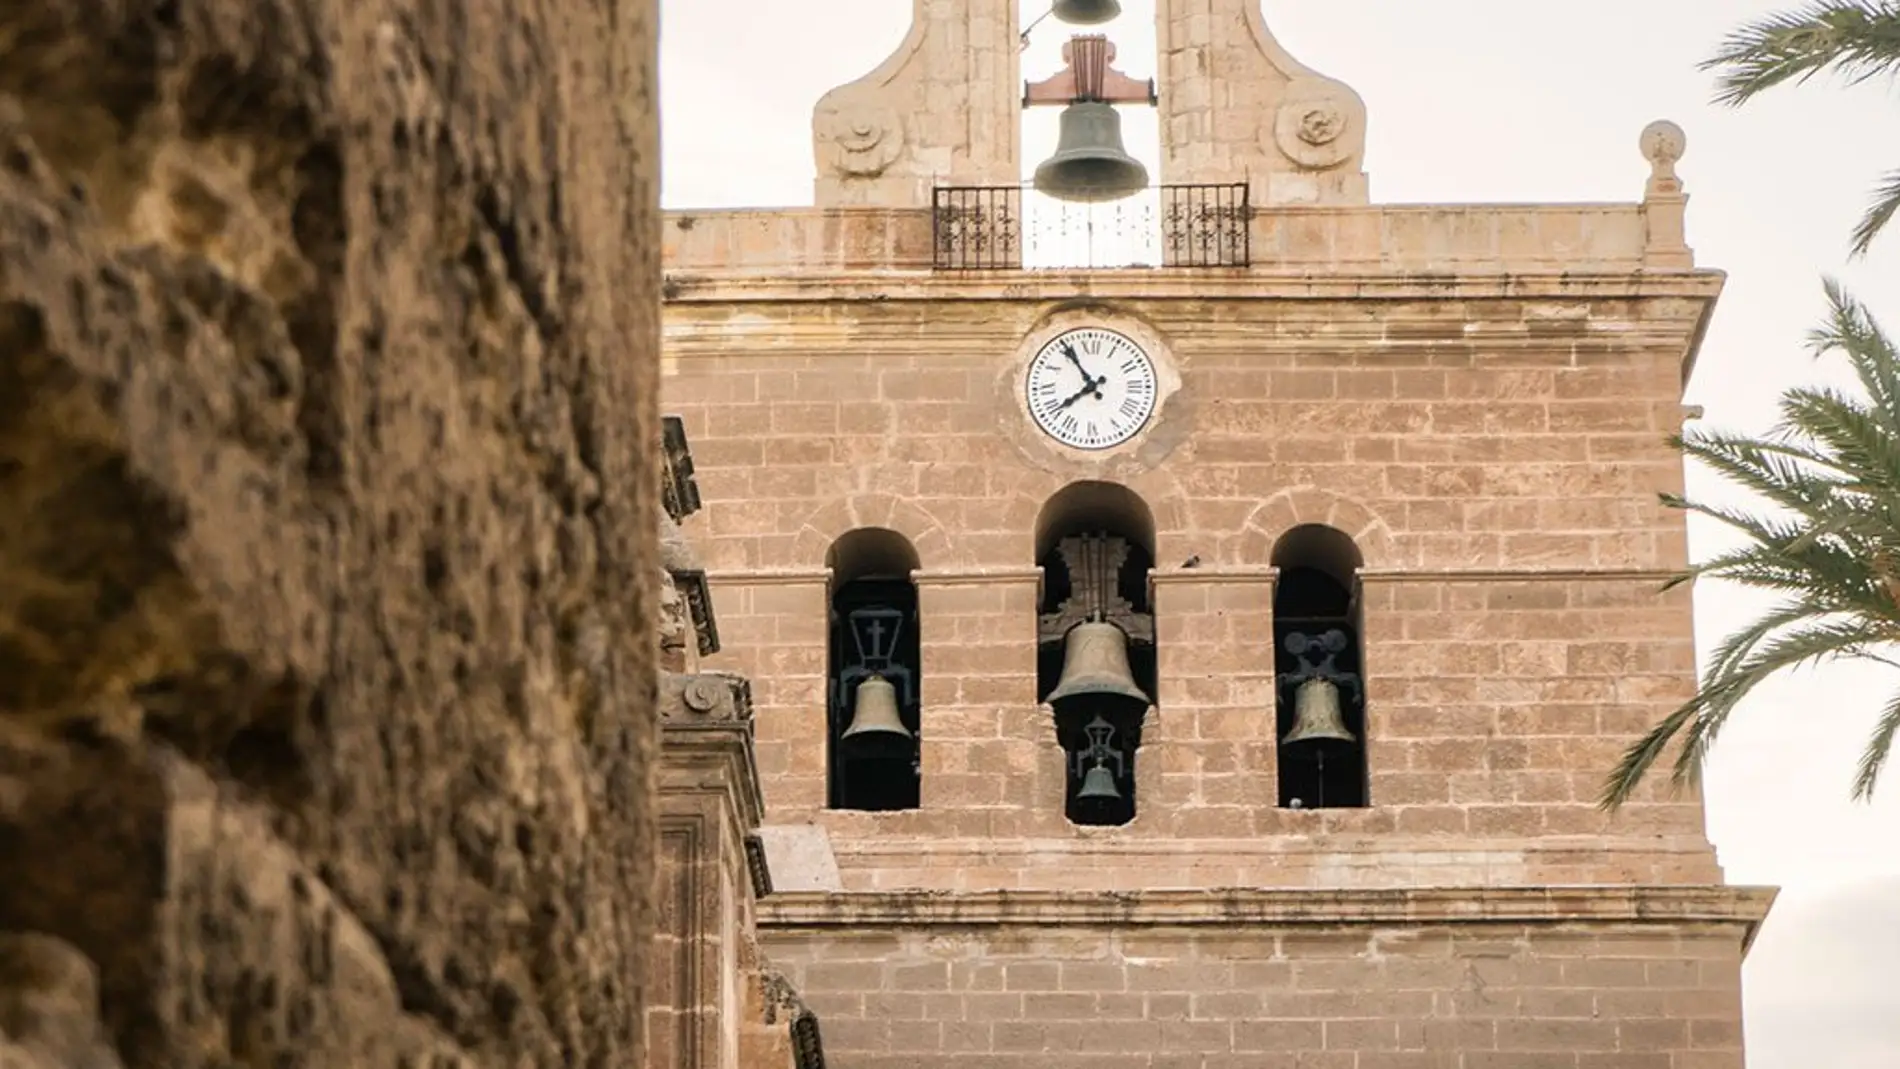 Mañana quedará abierta al público la torre campanario de la Catedral de Almería